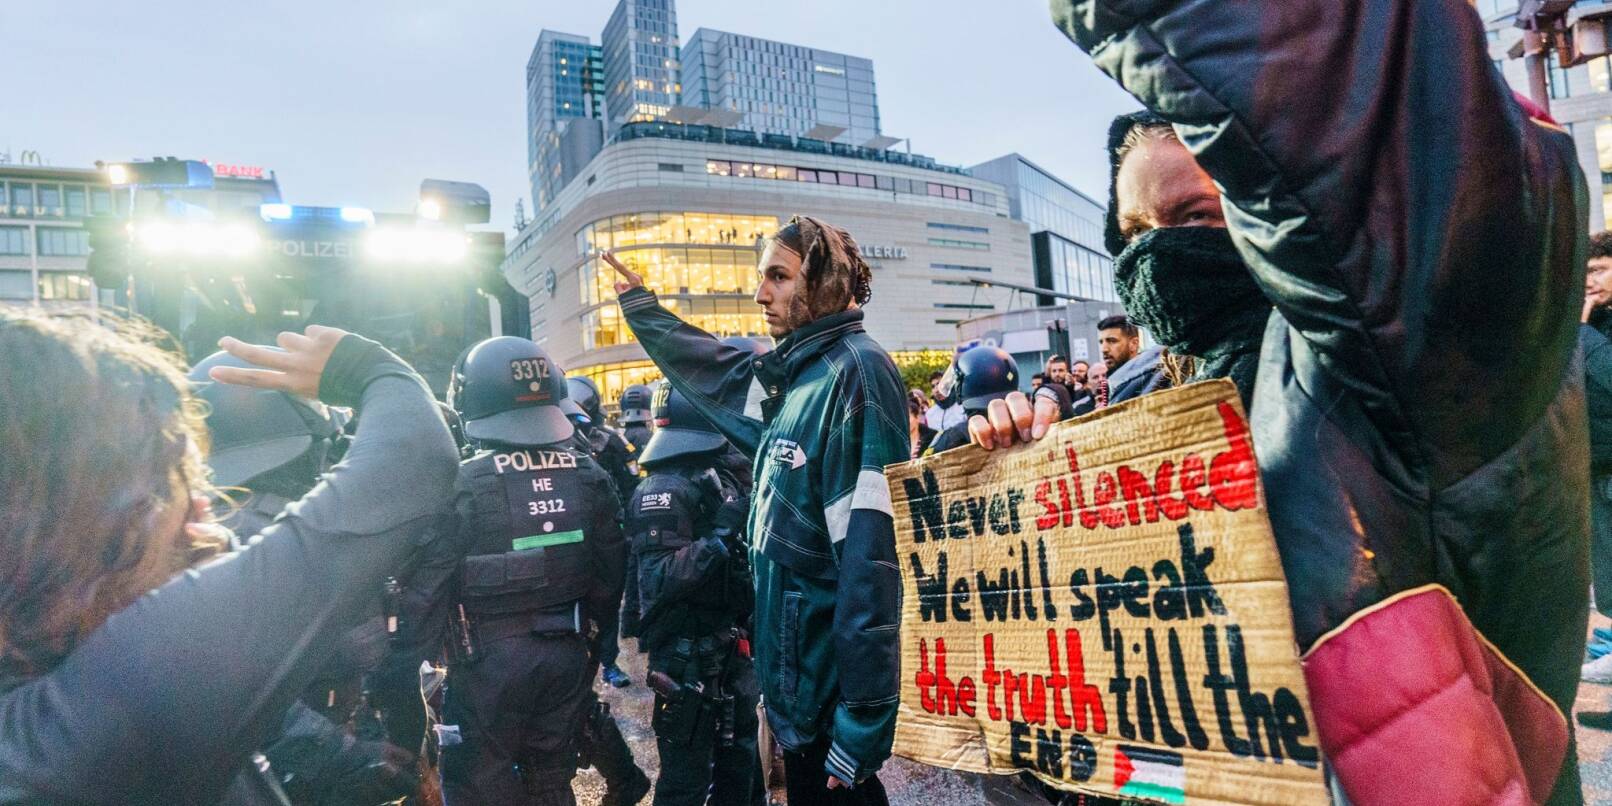 Eine Pro-Palästina Demo in Frankfurt am Main im Oktober. Gegen die Demonstrierenden wurden Wasserwerfer eingesetzt.